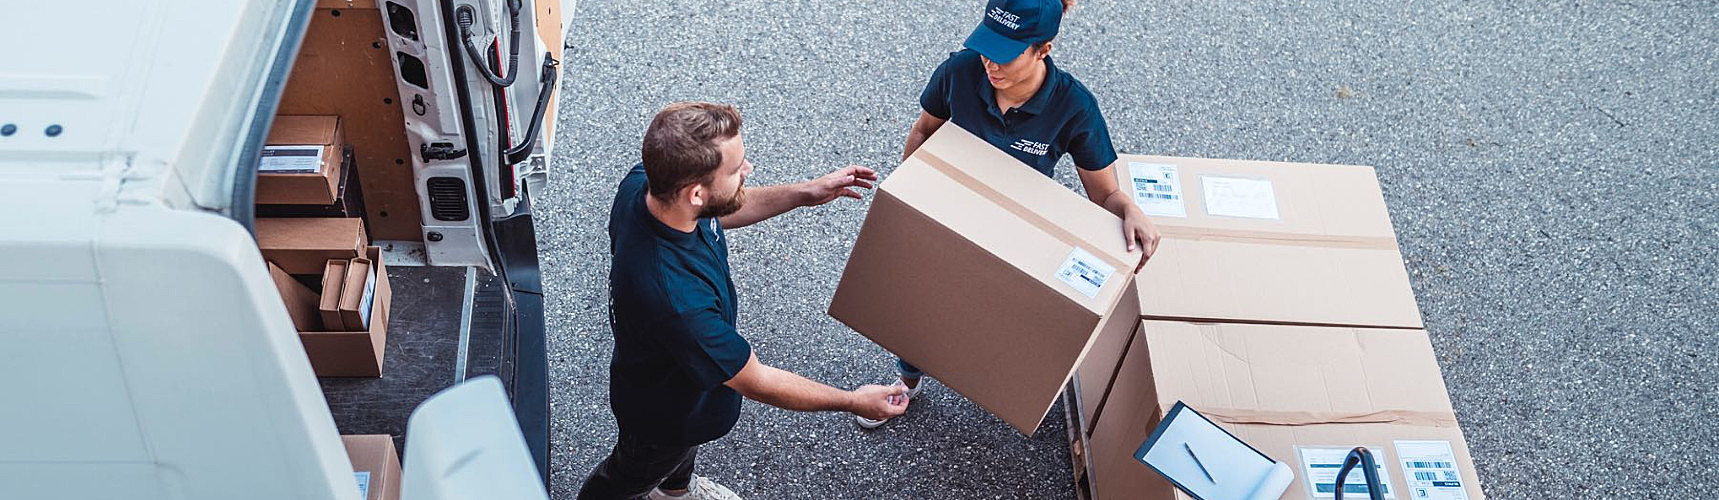 Frete Spot: um entregador faz a entrega de mercadoria numa caixa a uma funcionária da empresa